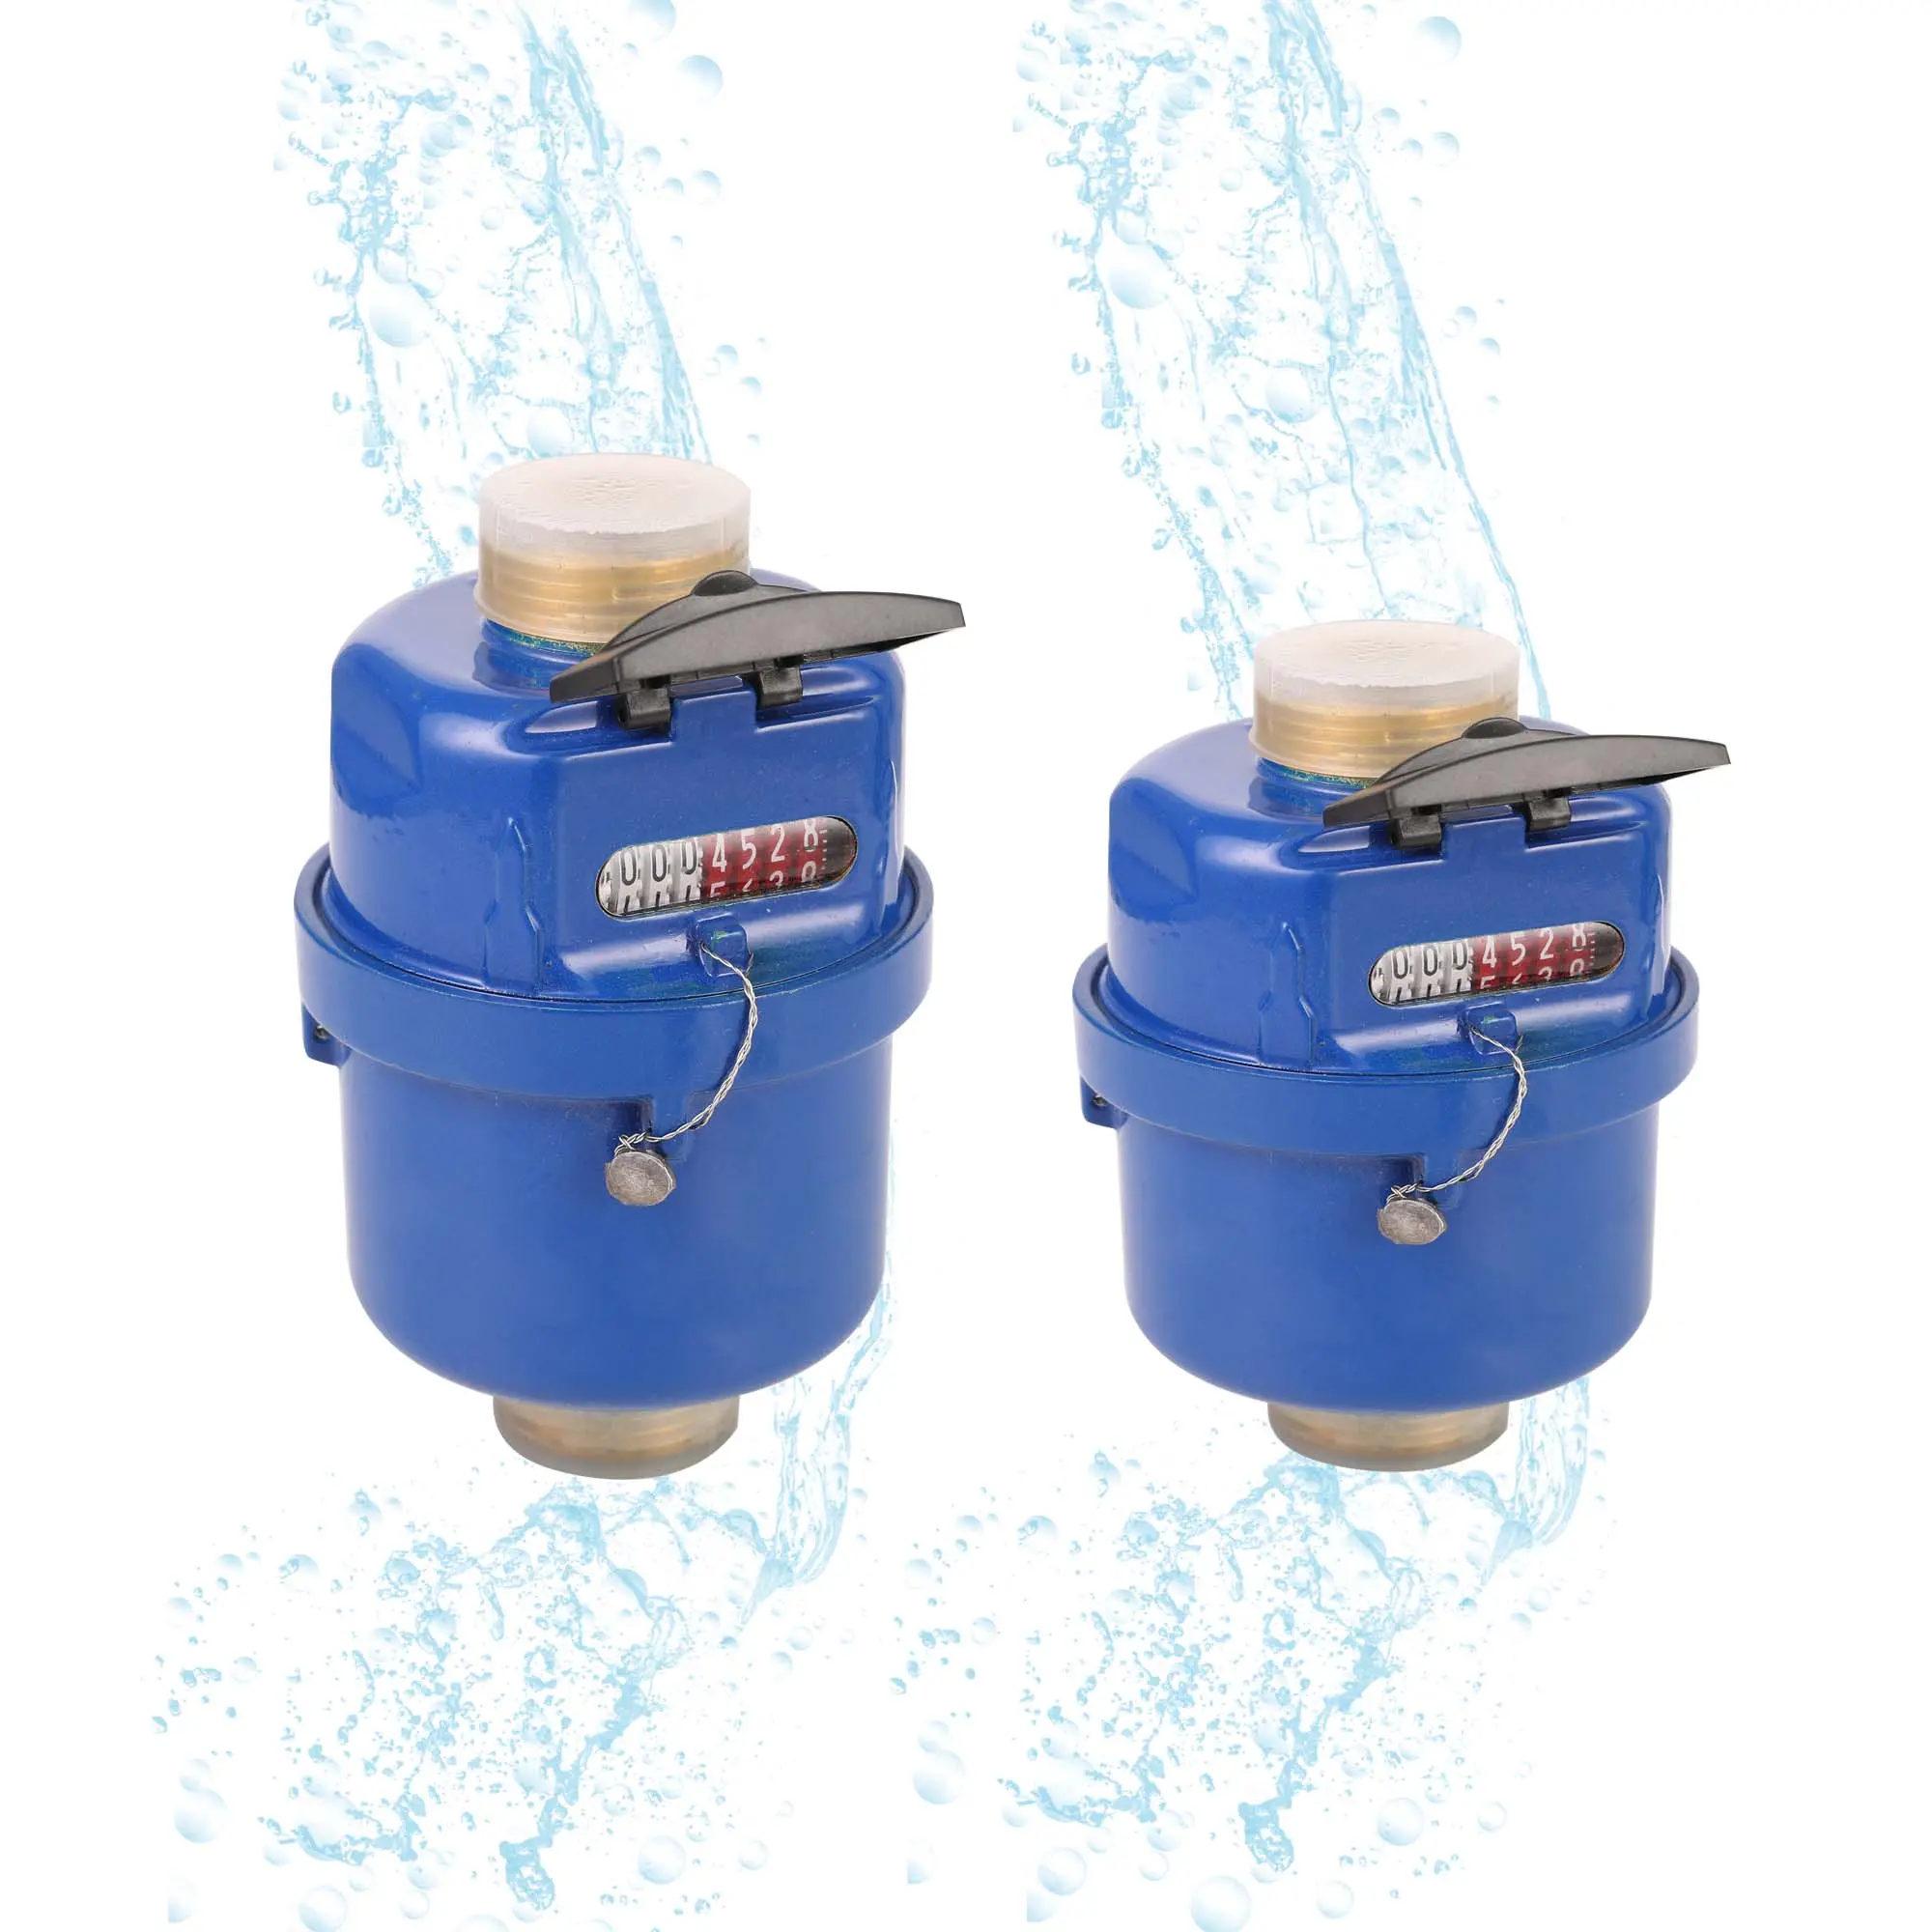 Счетчик воды среднего объемного типа класса C R160 водометр OIML Сертифицированный Высокое качество